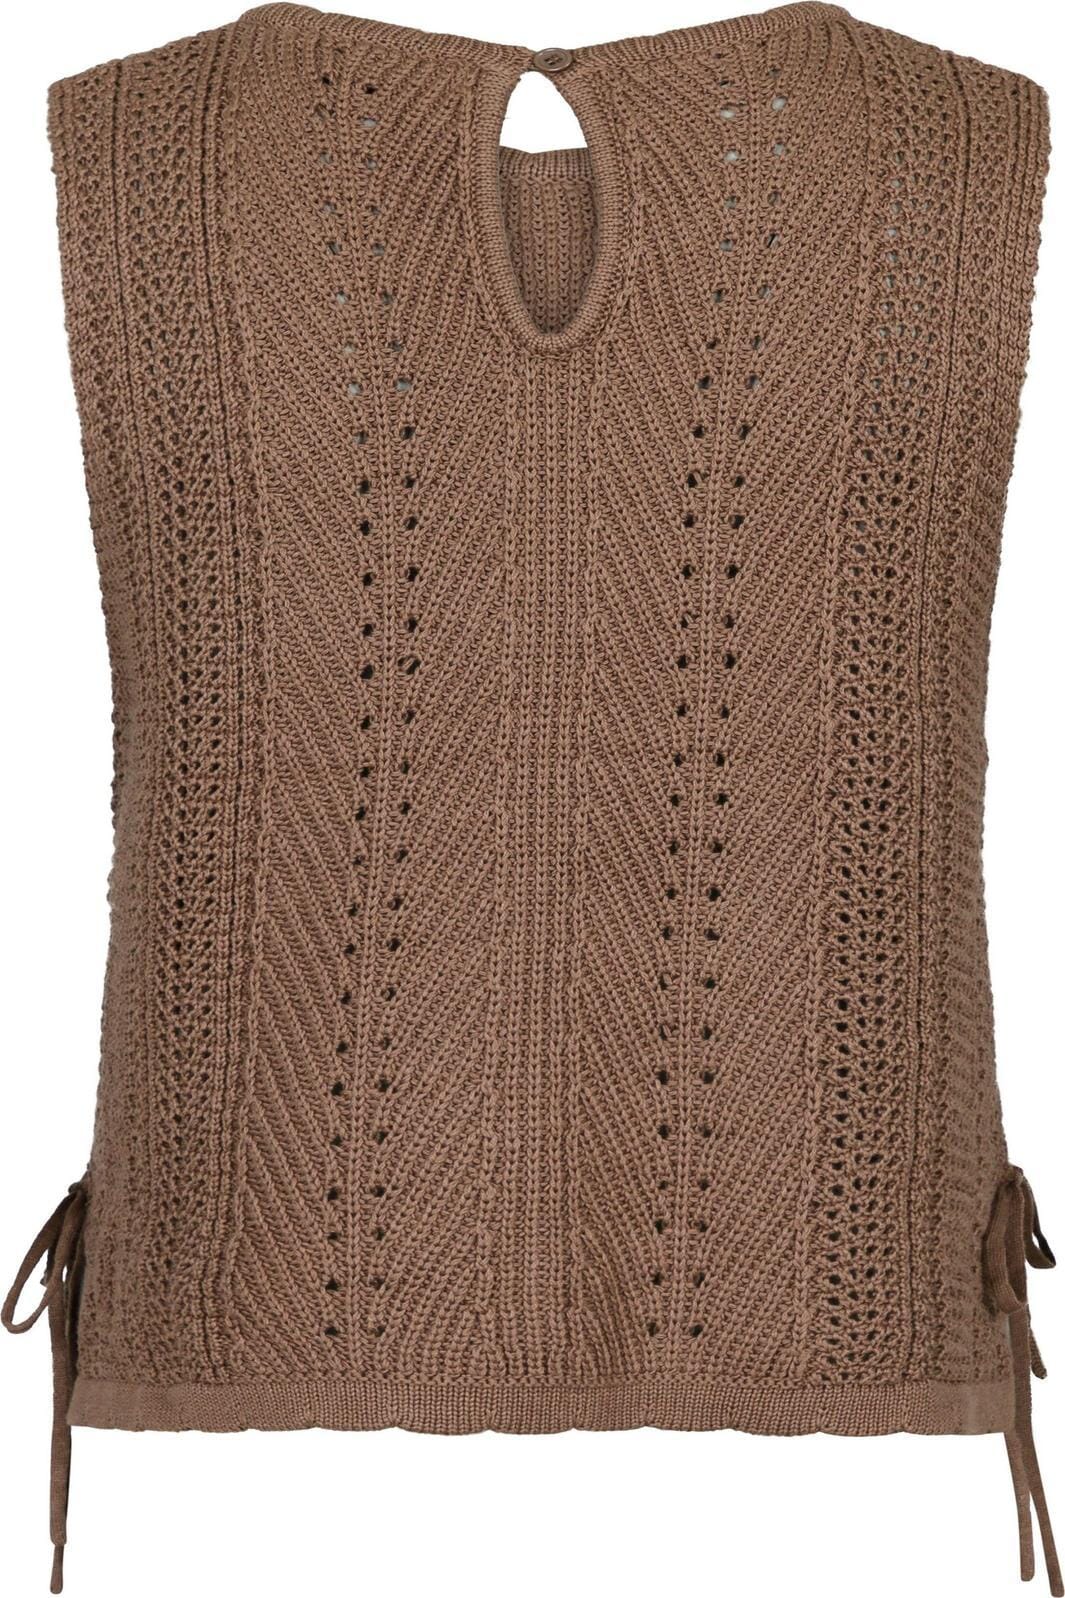 Neo Noir - Aritza Crochet Knit Top - Dusty Brown